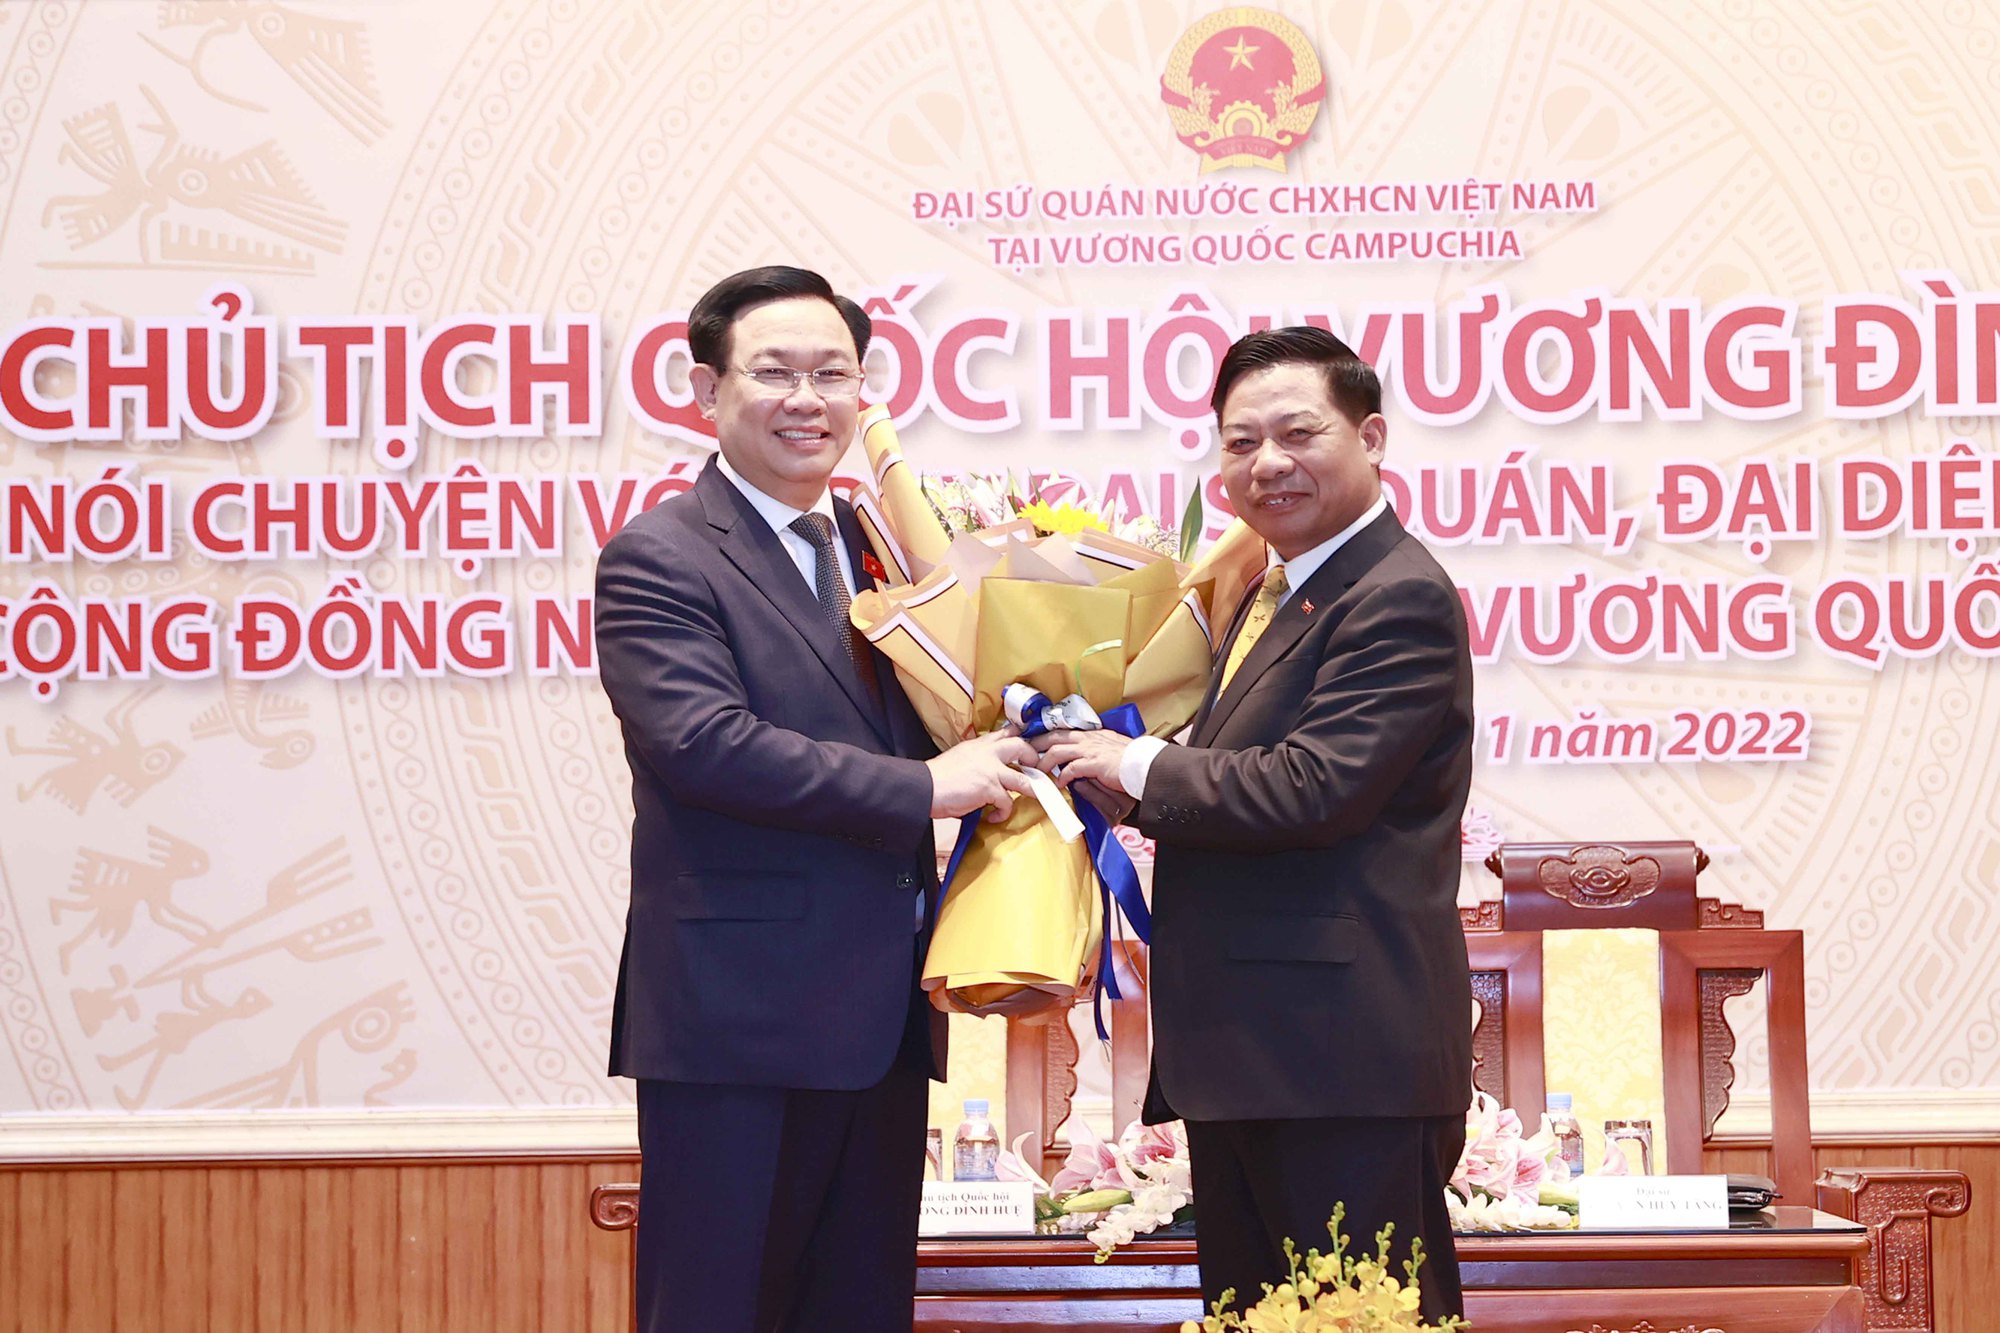 Chủ tịch Quốc hội Vương Đình Huệ gặp cộng đồng người Việt Nam tại Campuchia - Ảnh 14.